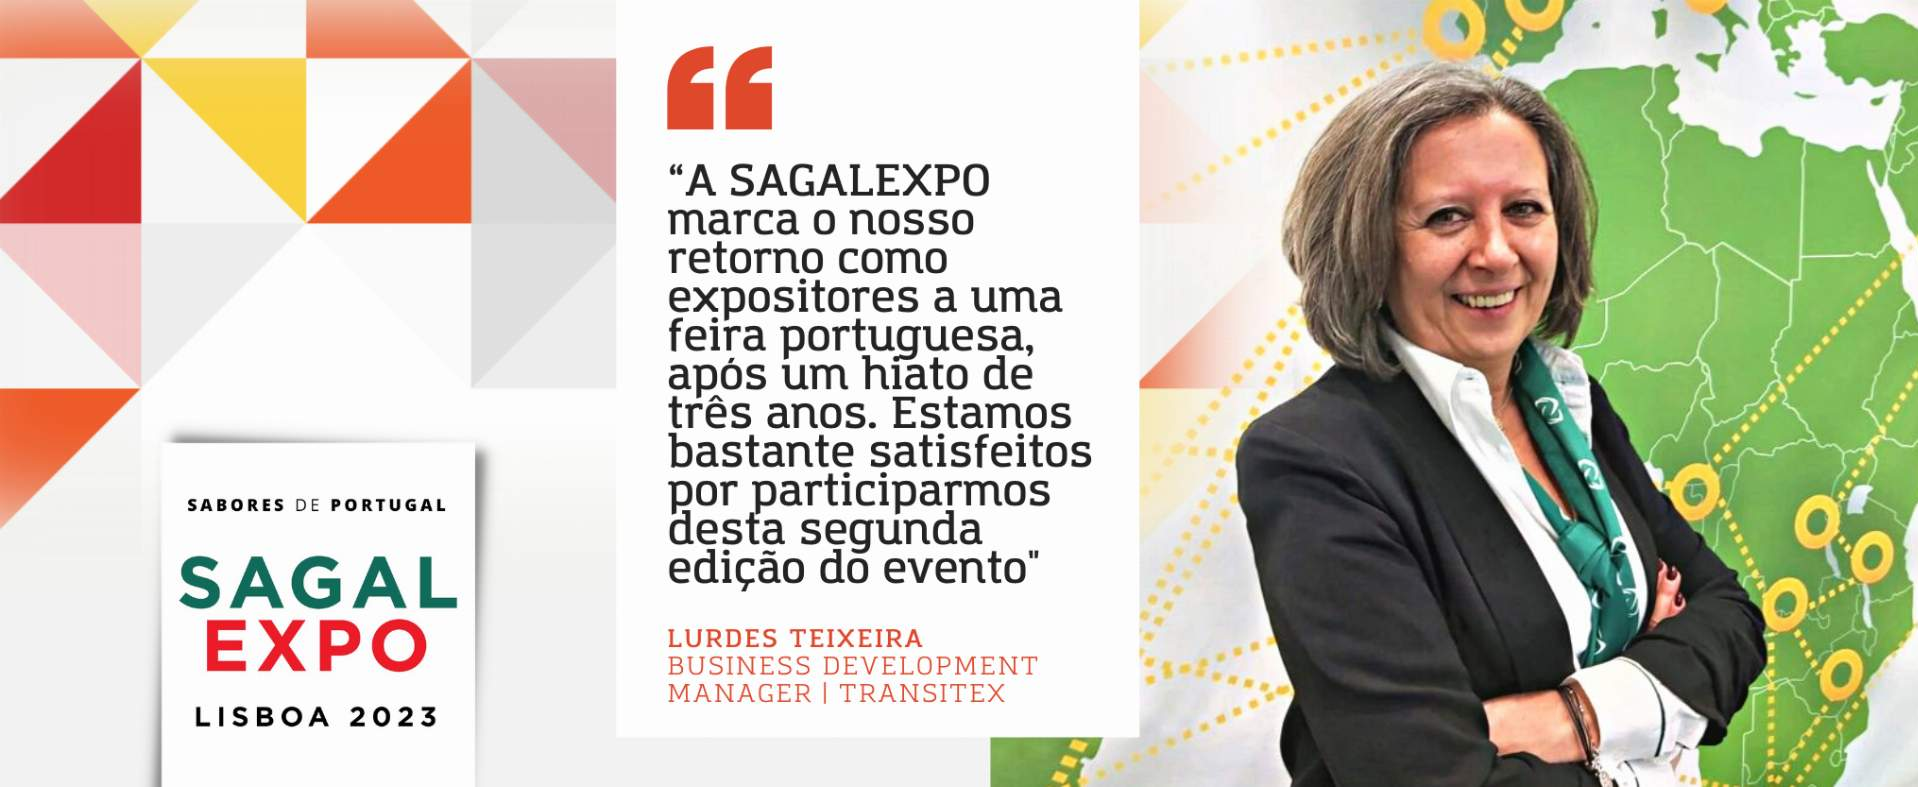 Transitex: “A SAGALEXPO marca o nosso retorno como expositores a uma feira portuguesa, após um hiato de três anos. Estamos bastante satisfeitos por participarmos desta segunda edição do evento”